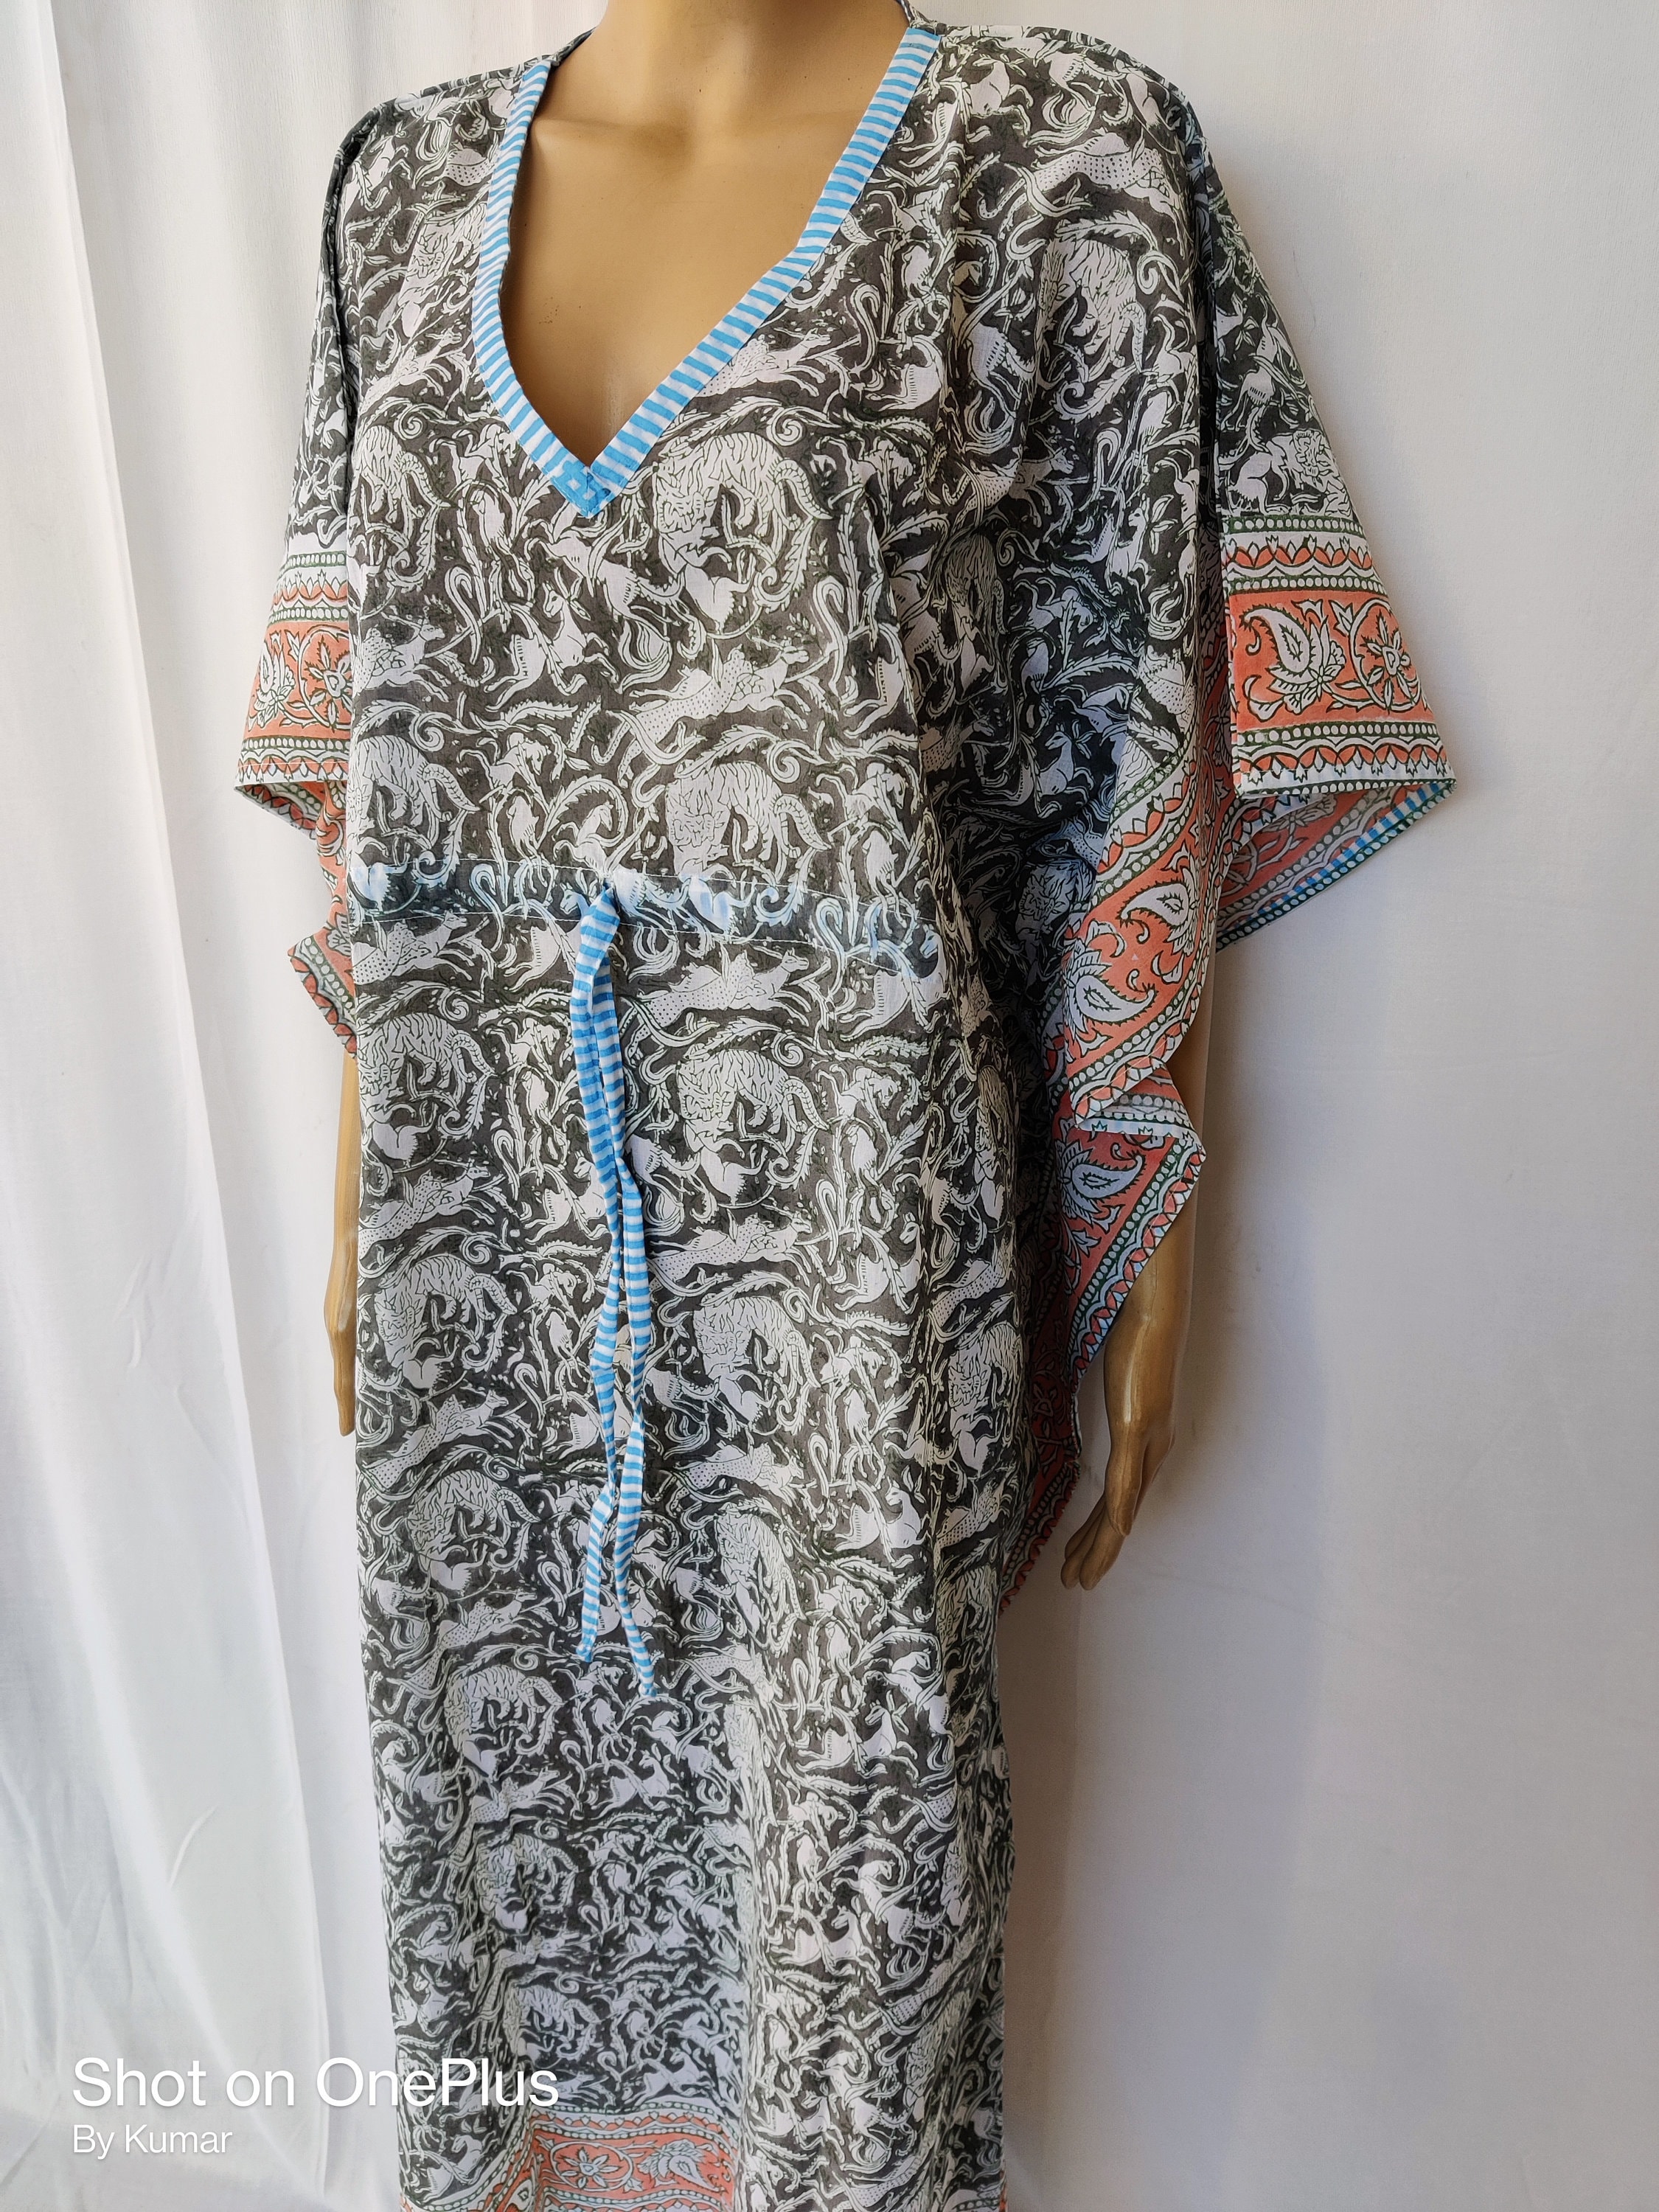 Cotton Indian Handmade Block Print Long Kaftan Beach Dress Floral Nighty Gown